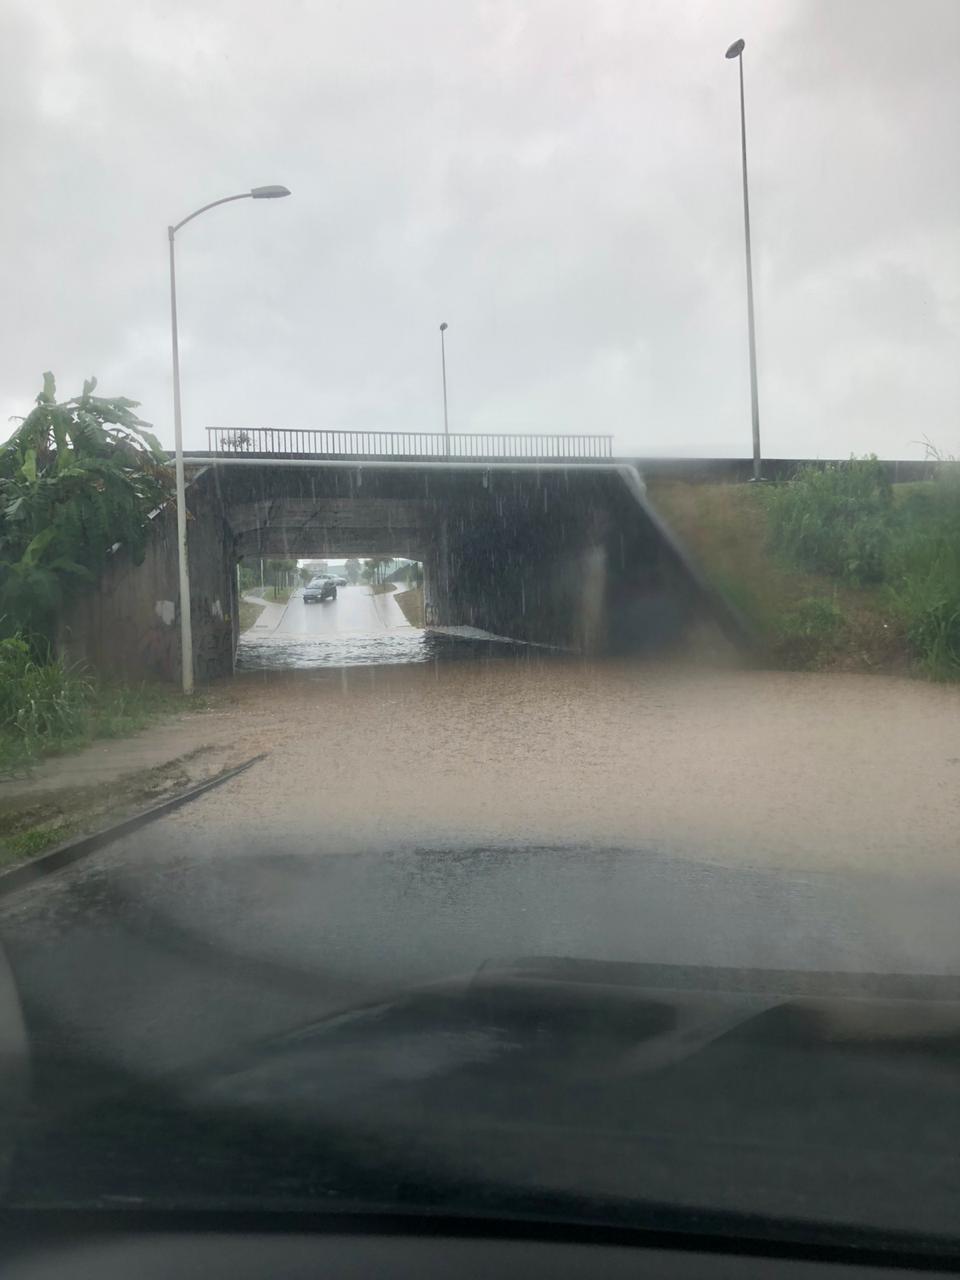     Une inondation signalée à Dothémare aux Abymes

